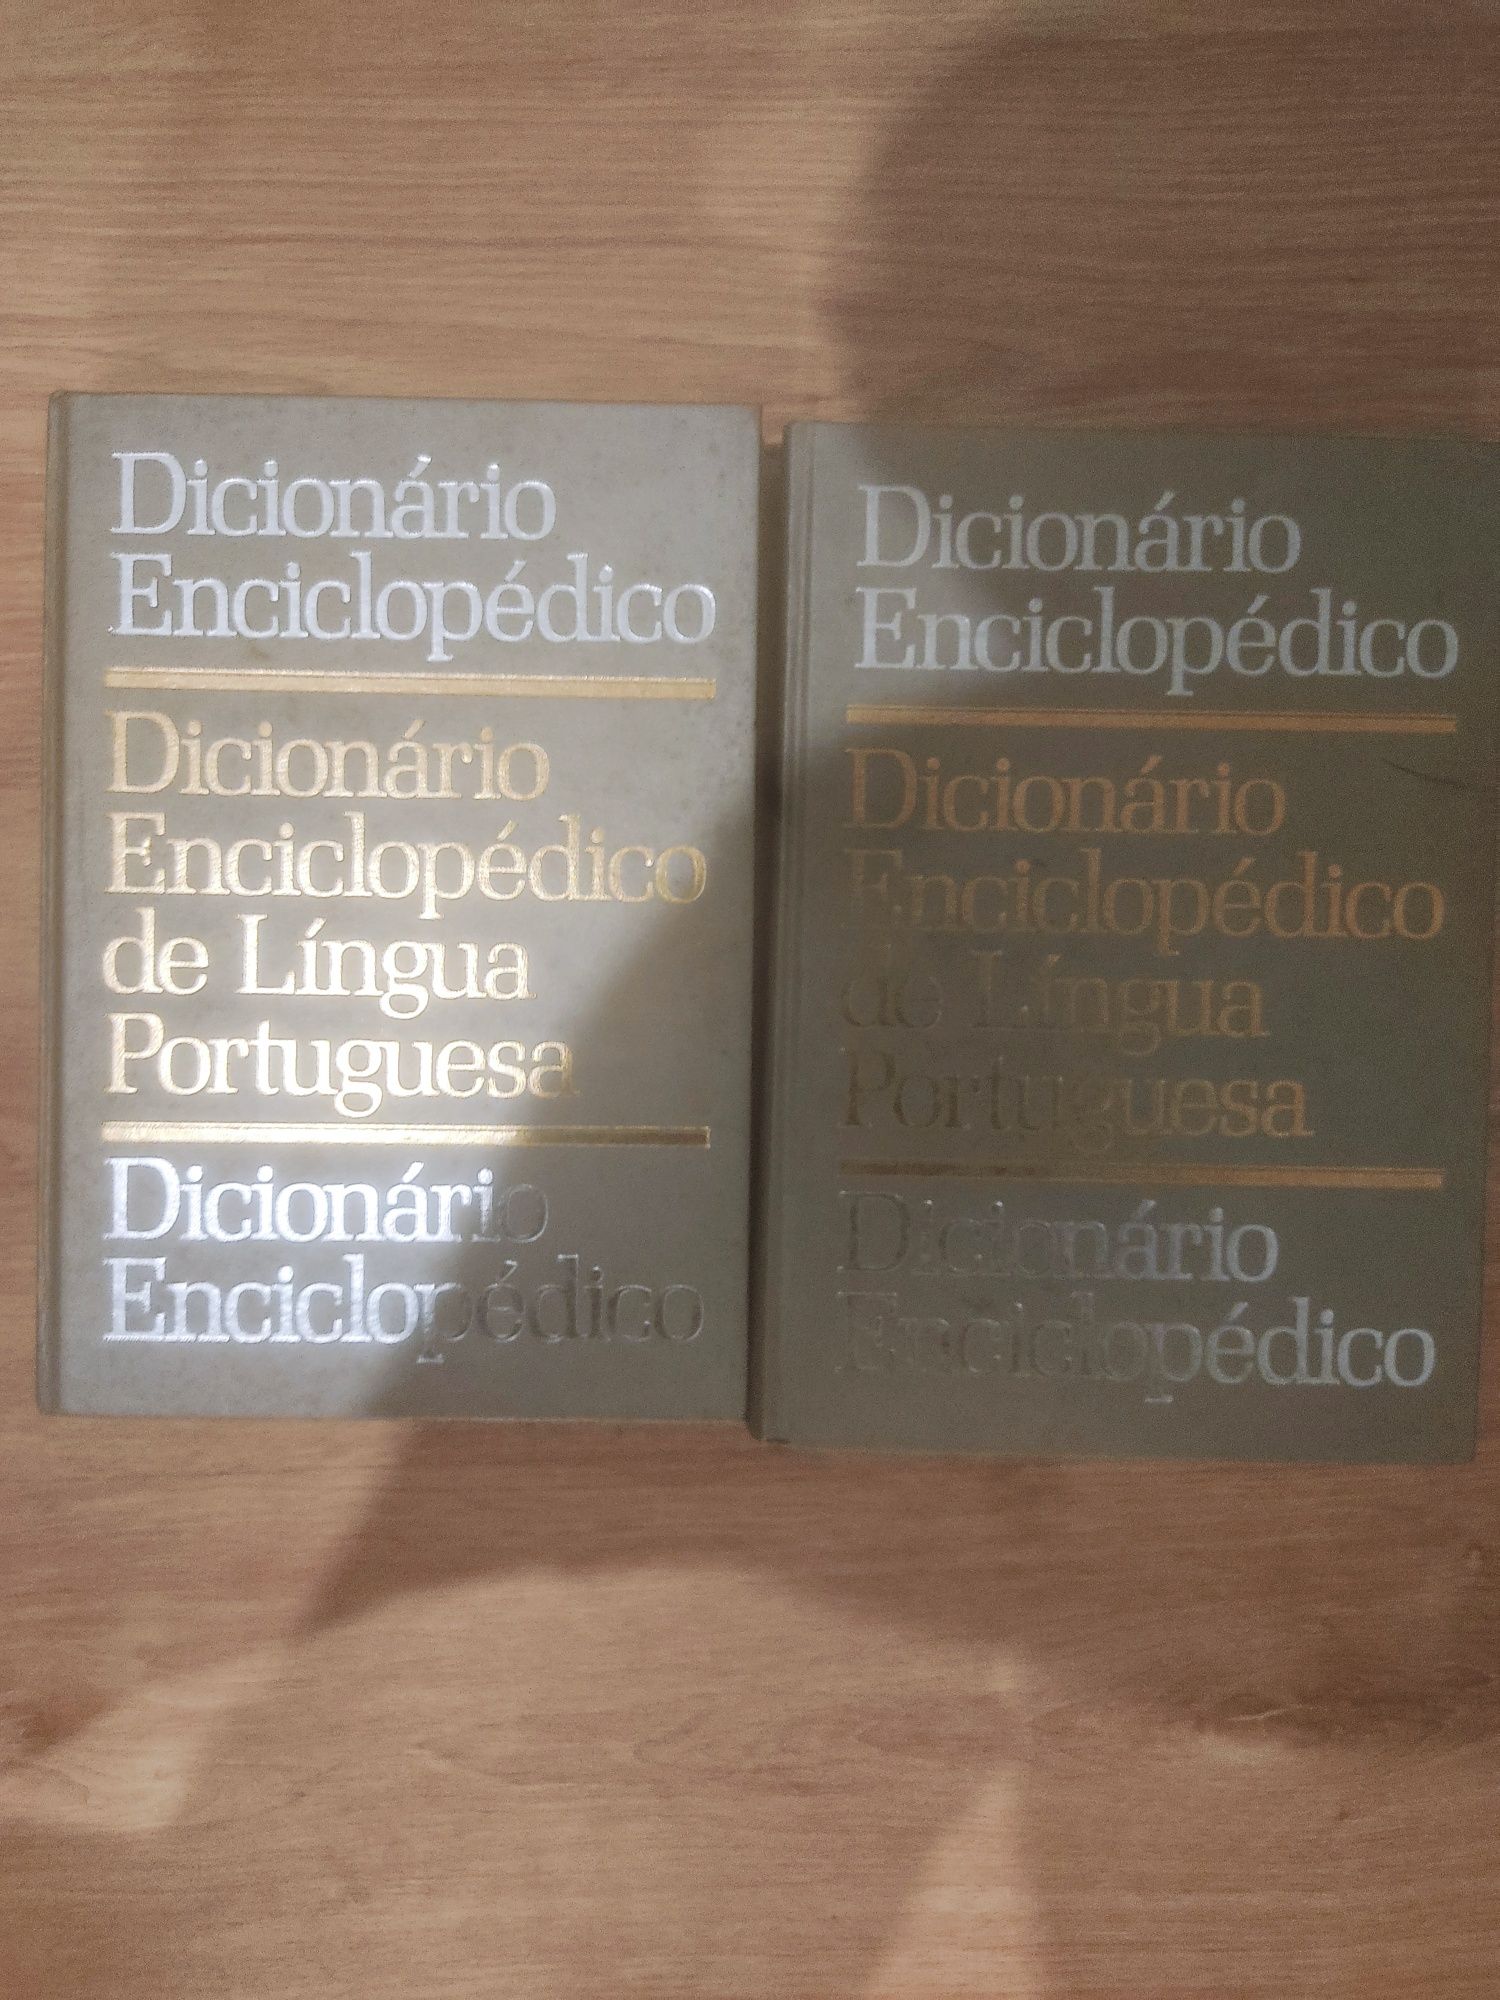 Dicionário enciclopédico de língua portuguesa